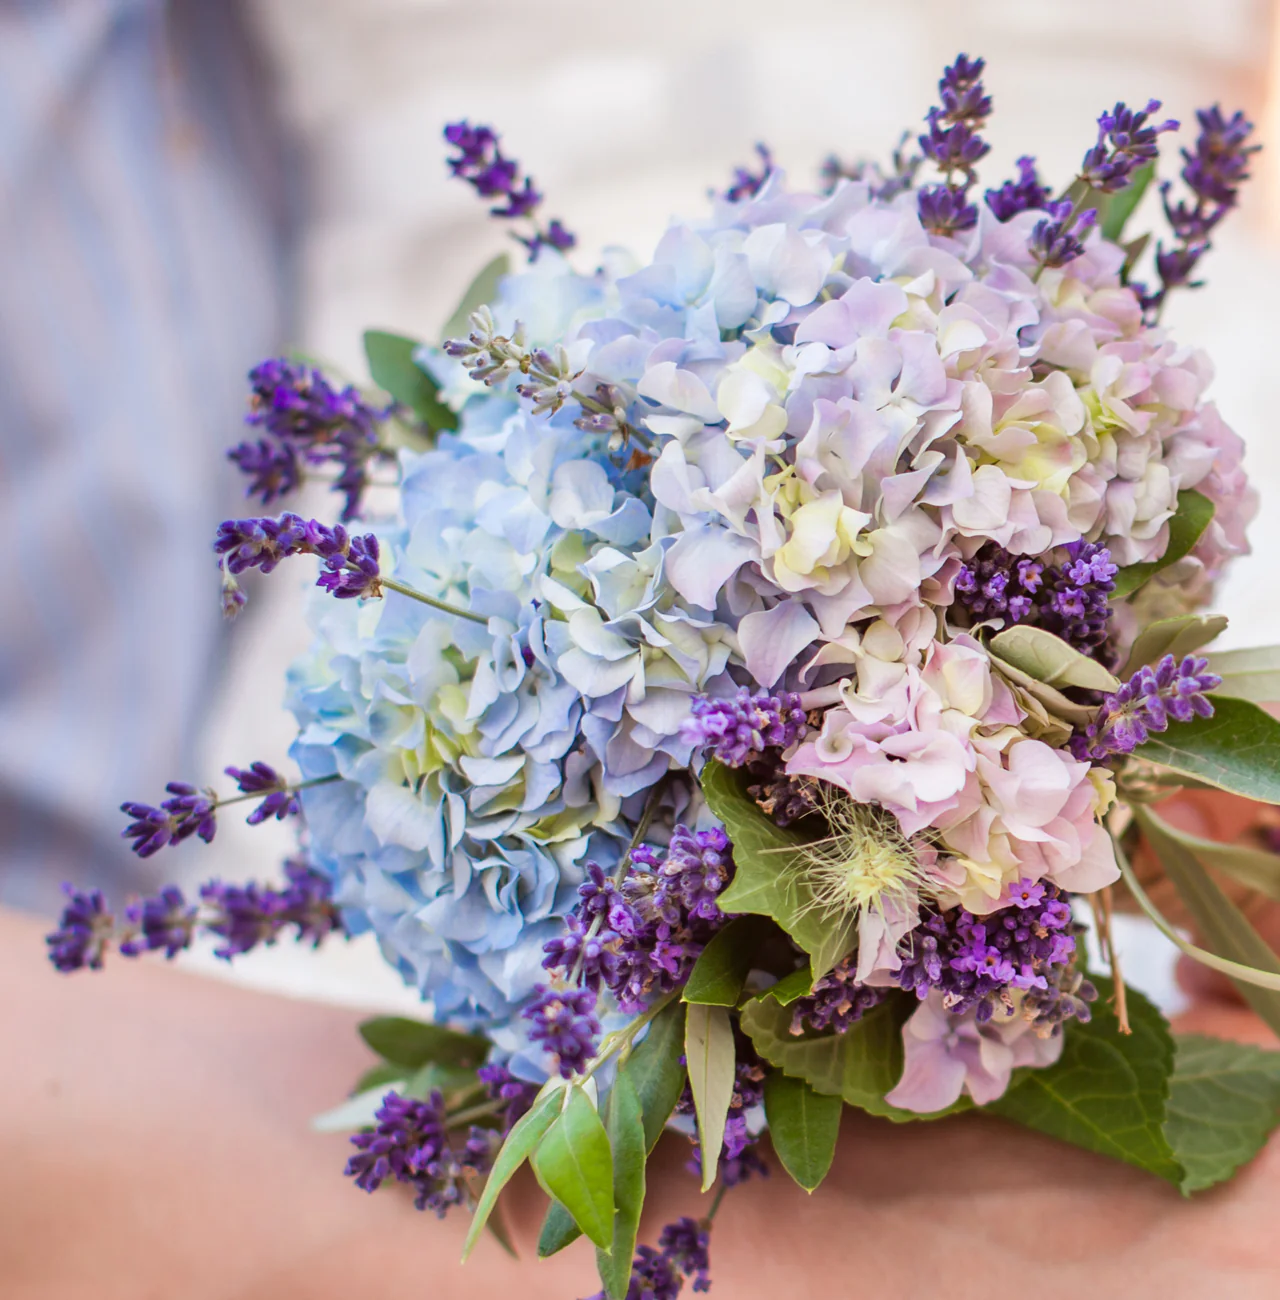 Lavendel uit eigen tuin gebruiken op je bruiloft bruidsboeket